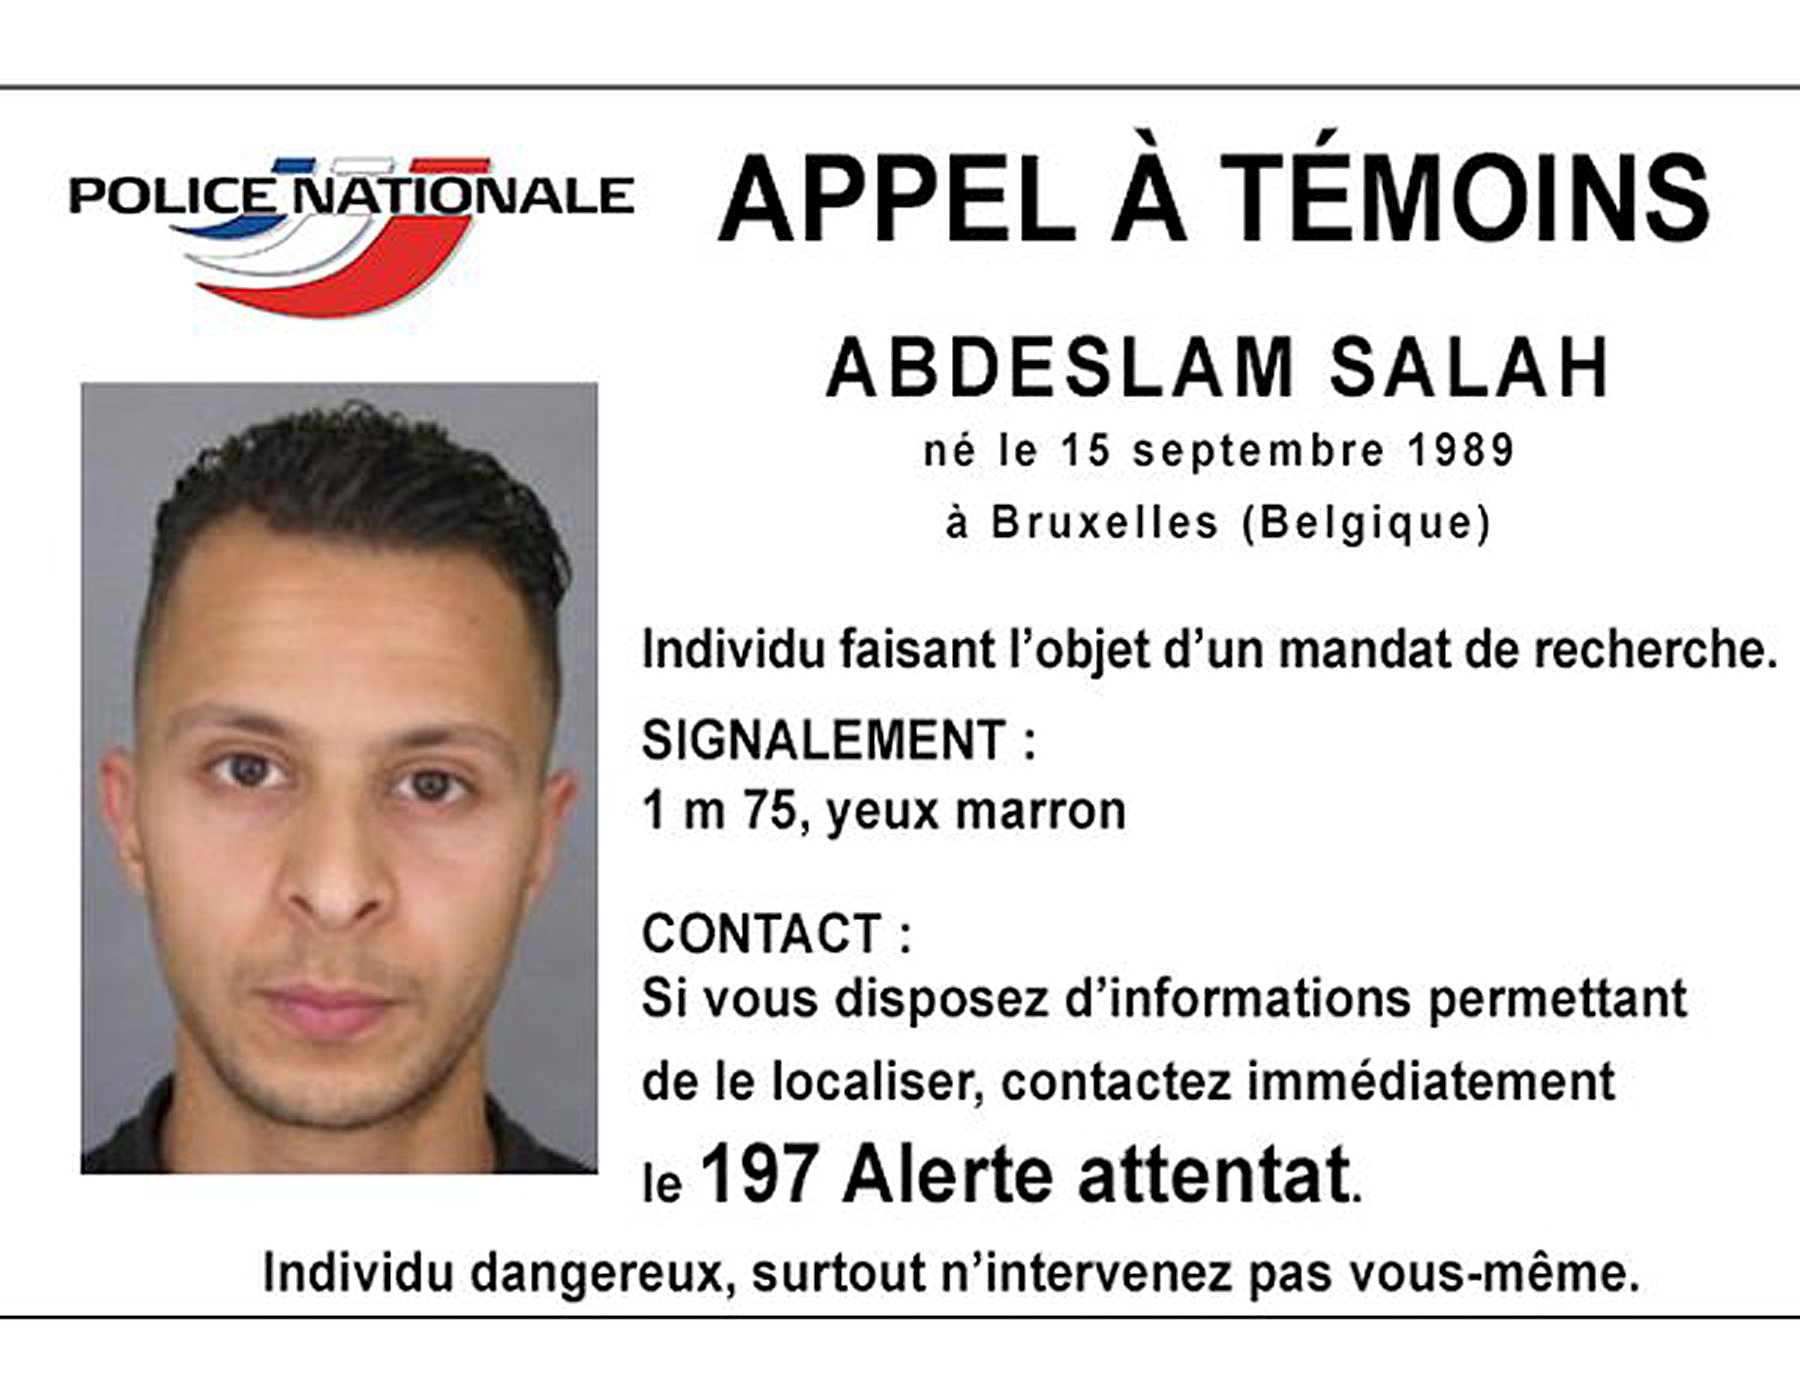 Salah Abdelsam compró detonadores en Francia antes de los atentados de París